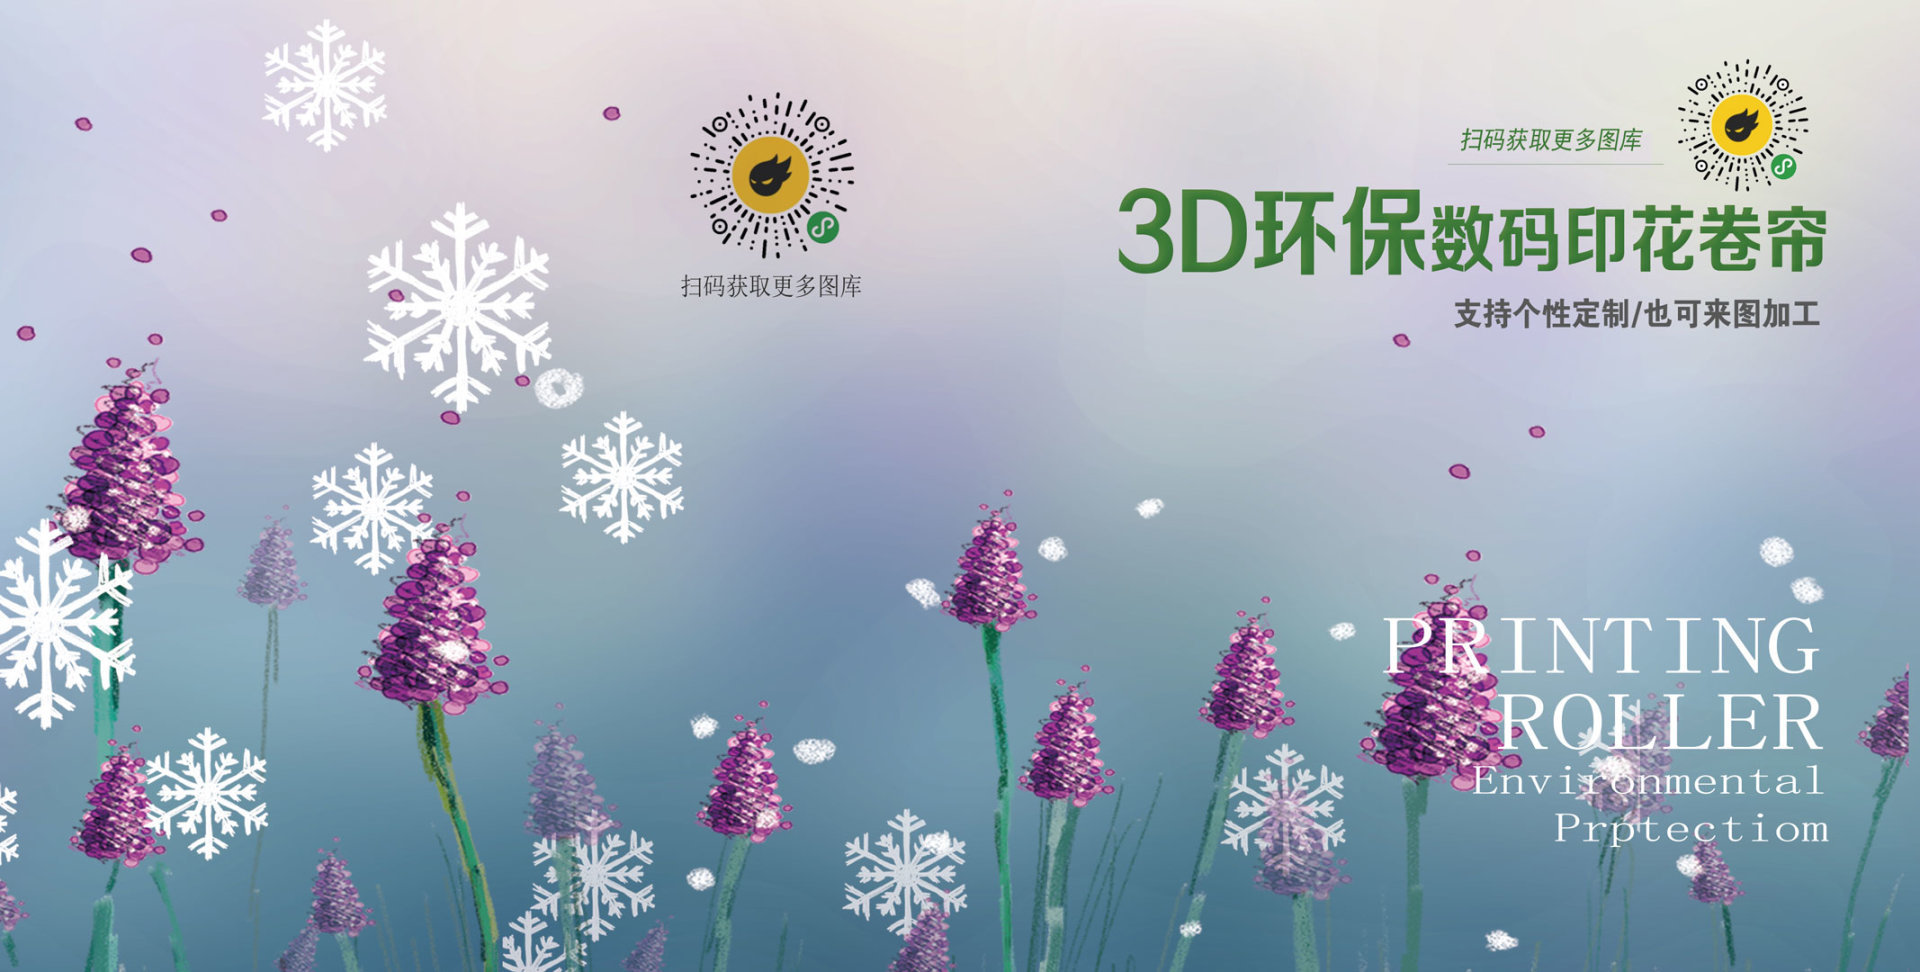 3D環保數碼印花卷簾